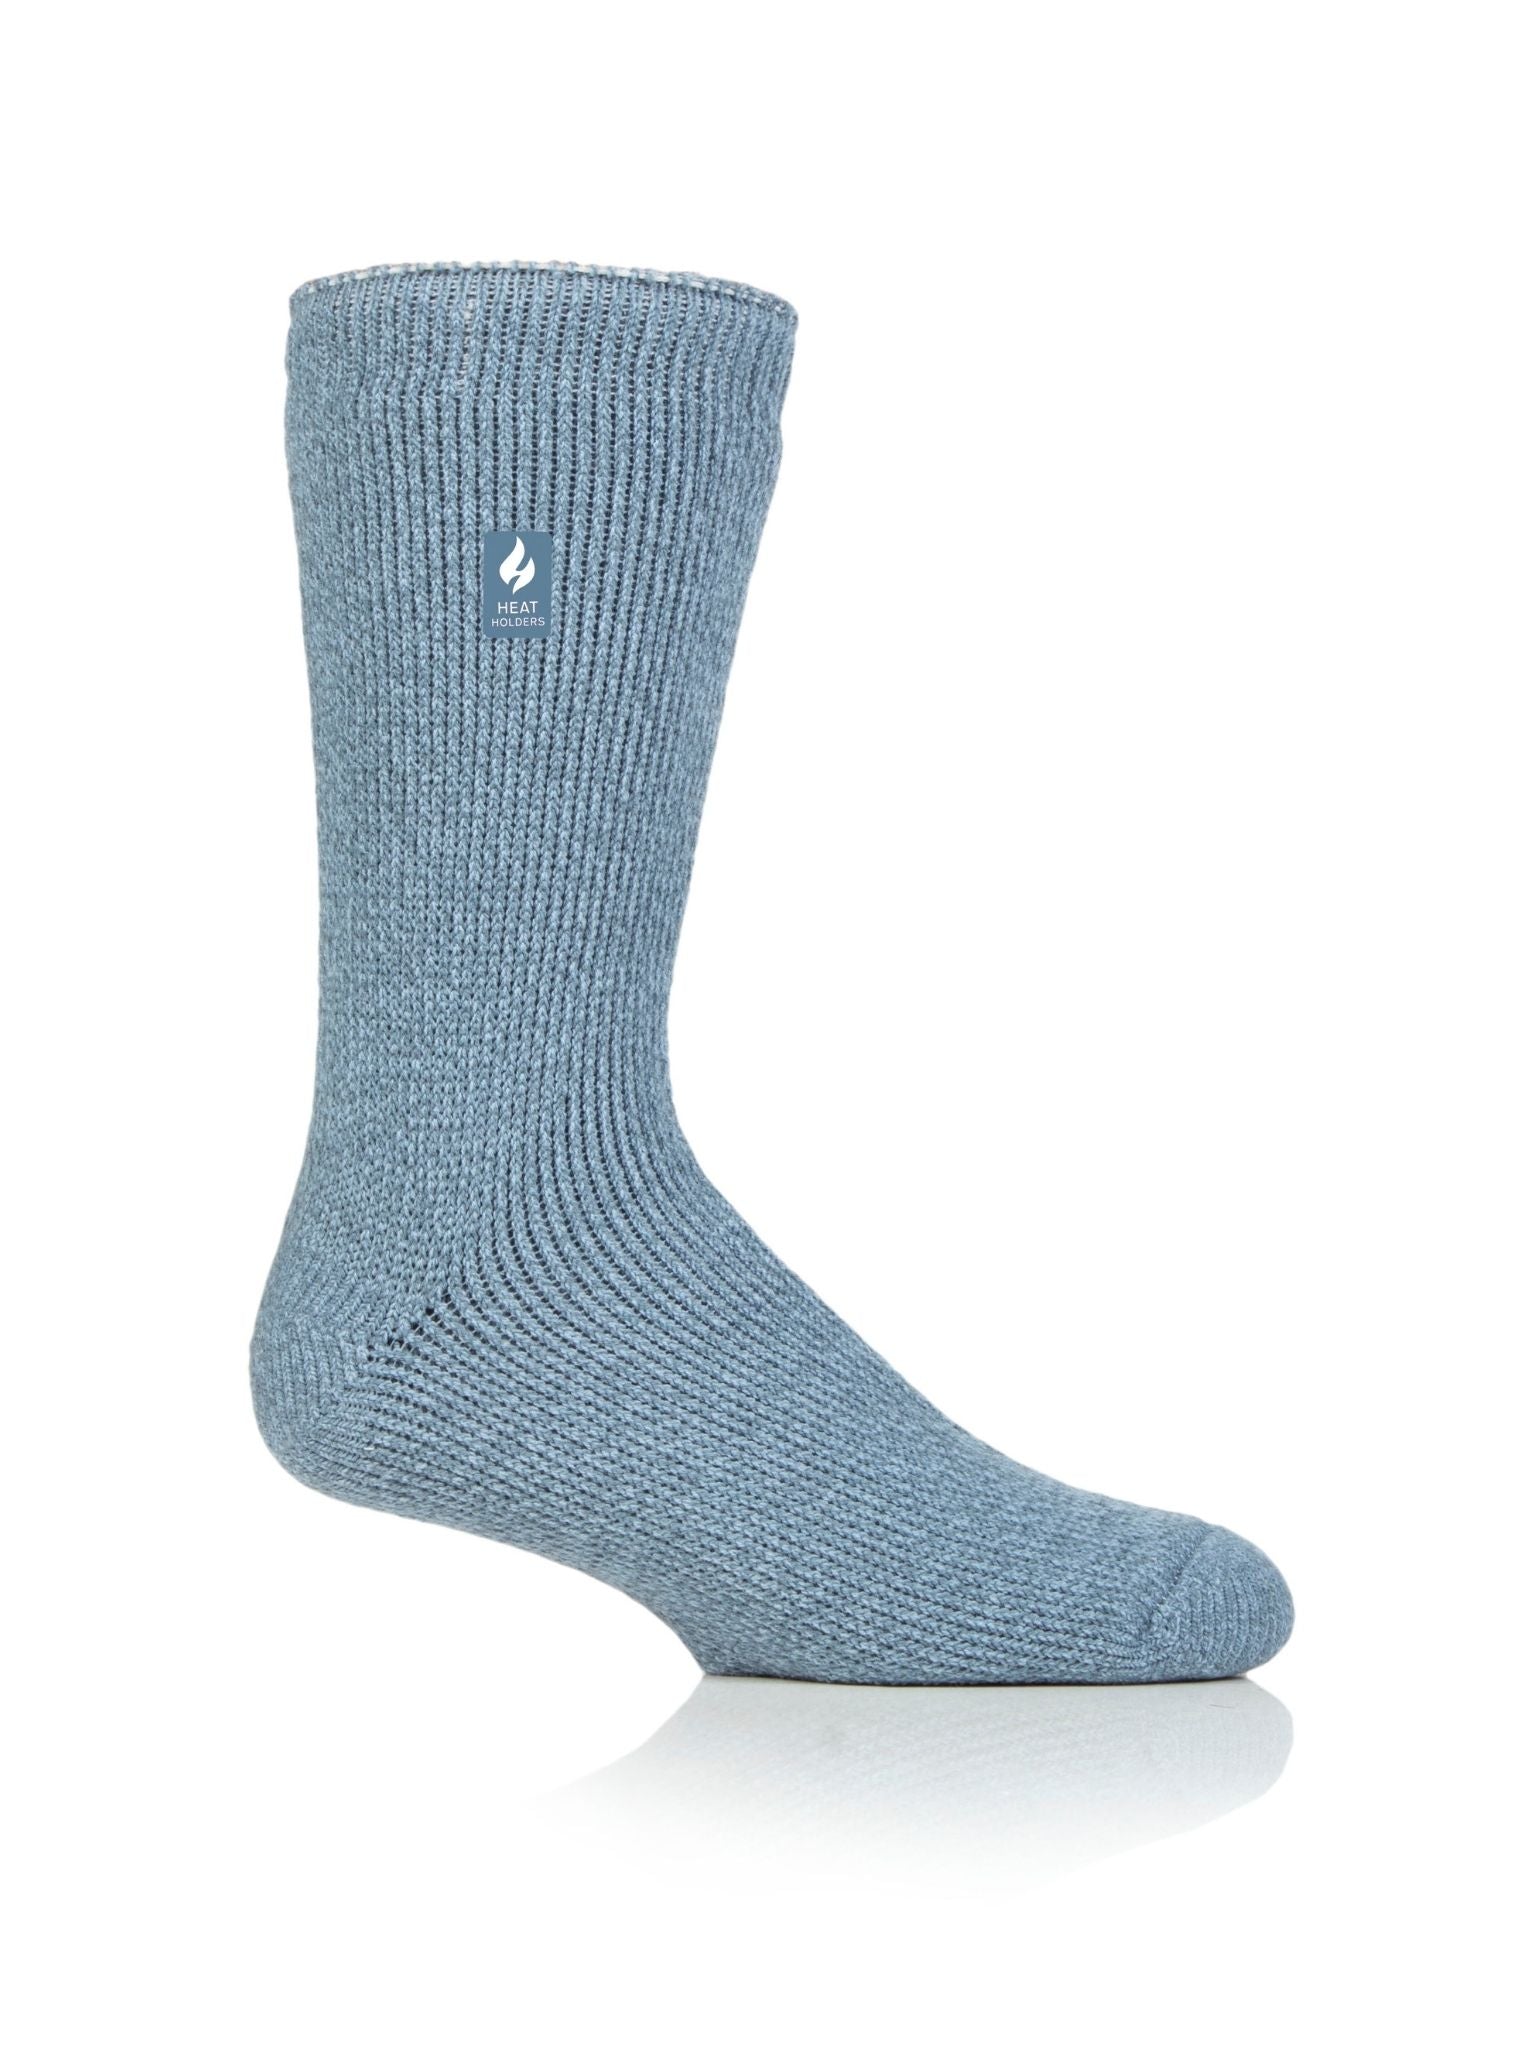 HEAT HOLDERS LITE Thermal Merino Wool Blend Sock - Men's